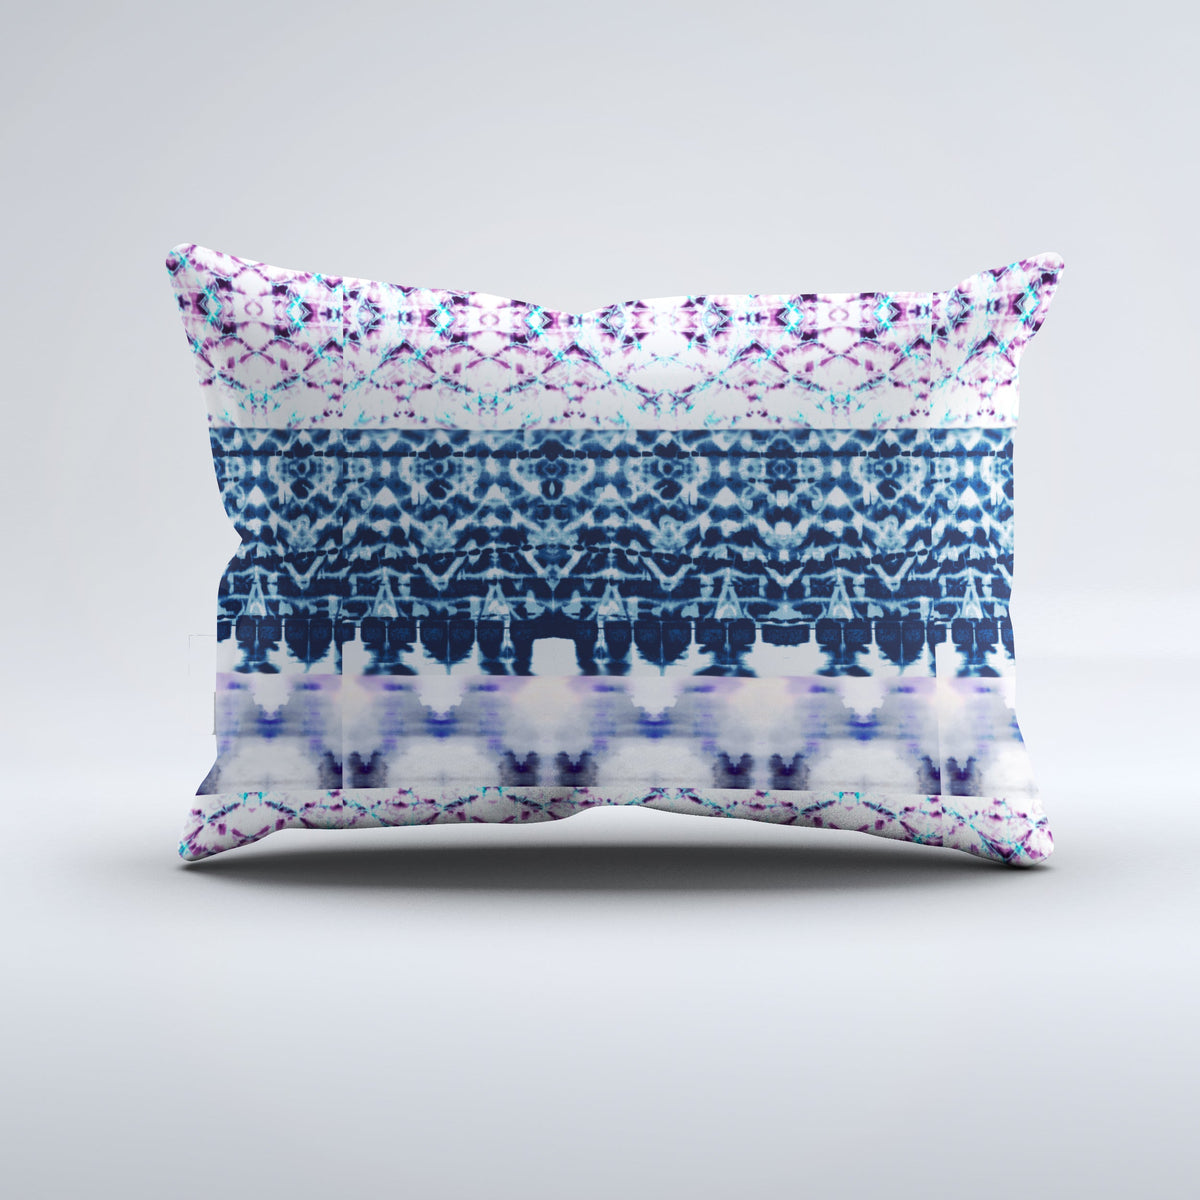 Bolster Pillow - Yoshi Lavender Bedding, Pillows, Bolster Pillow MWW 